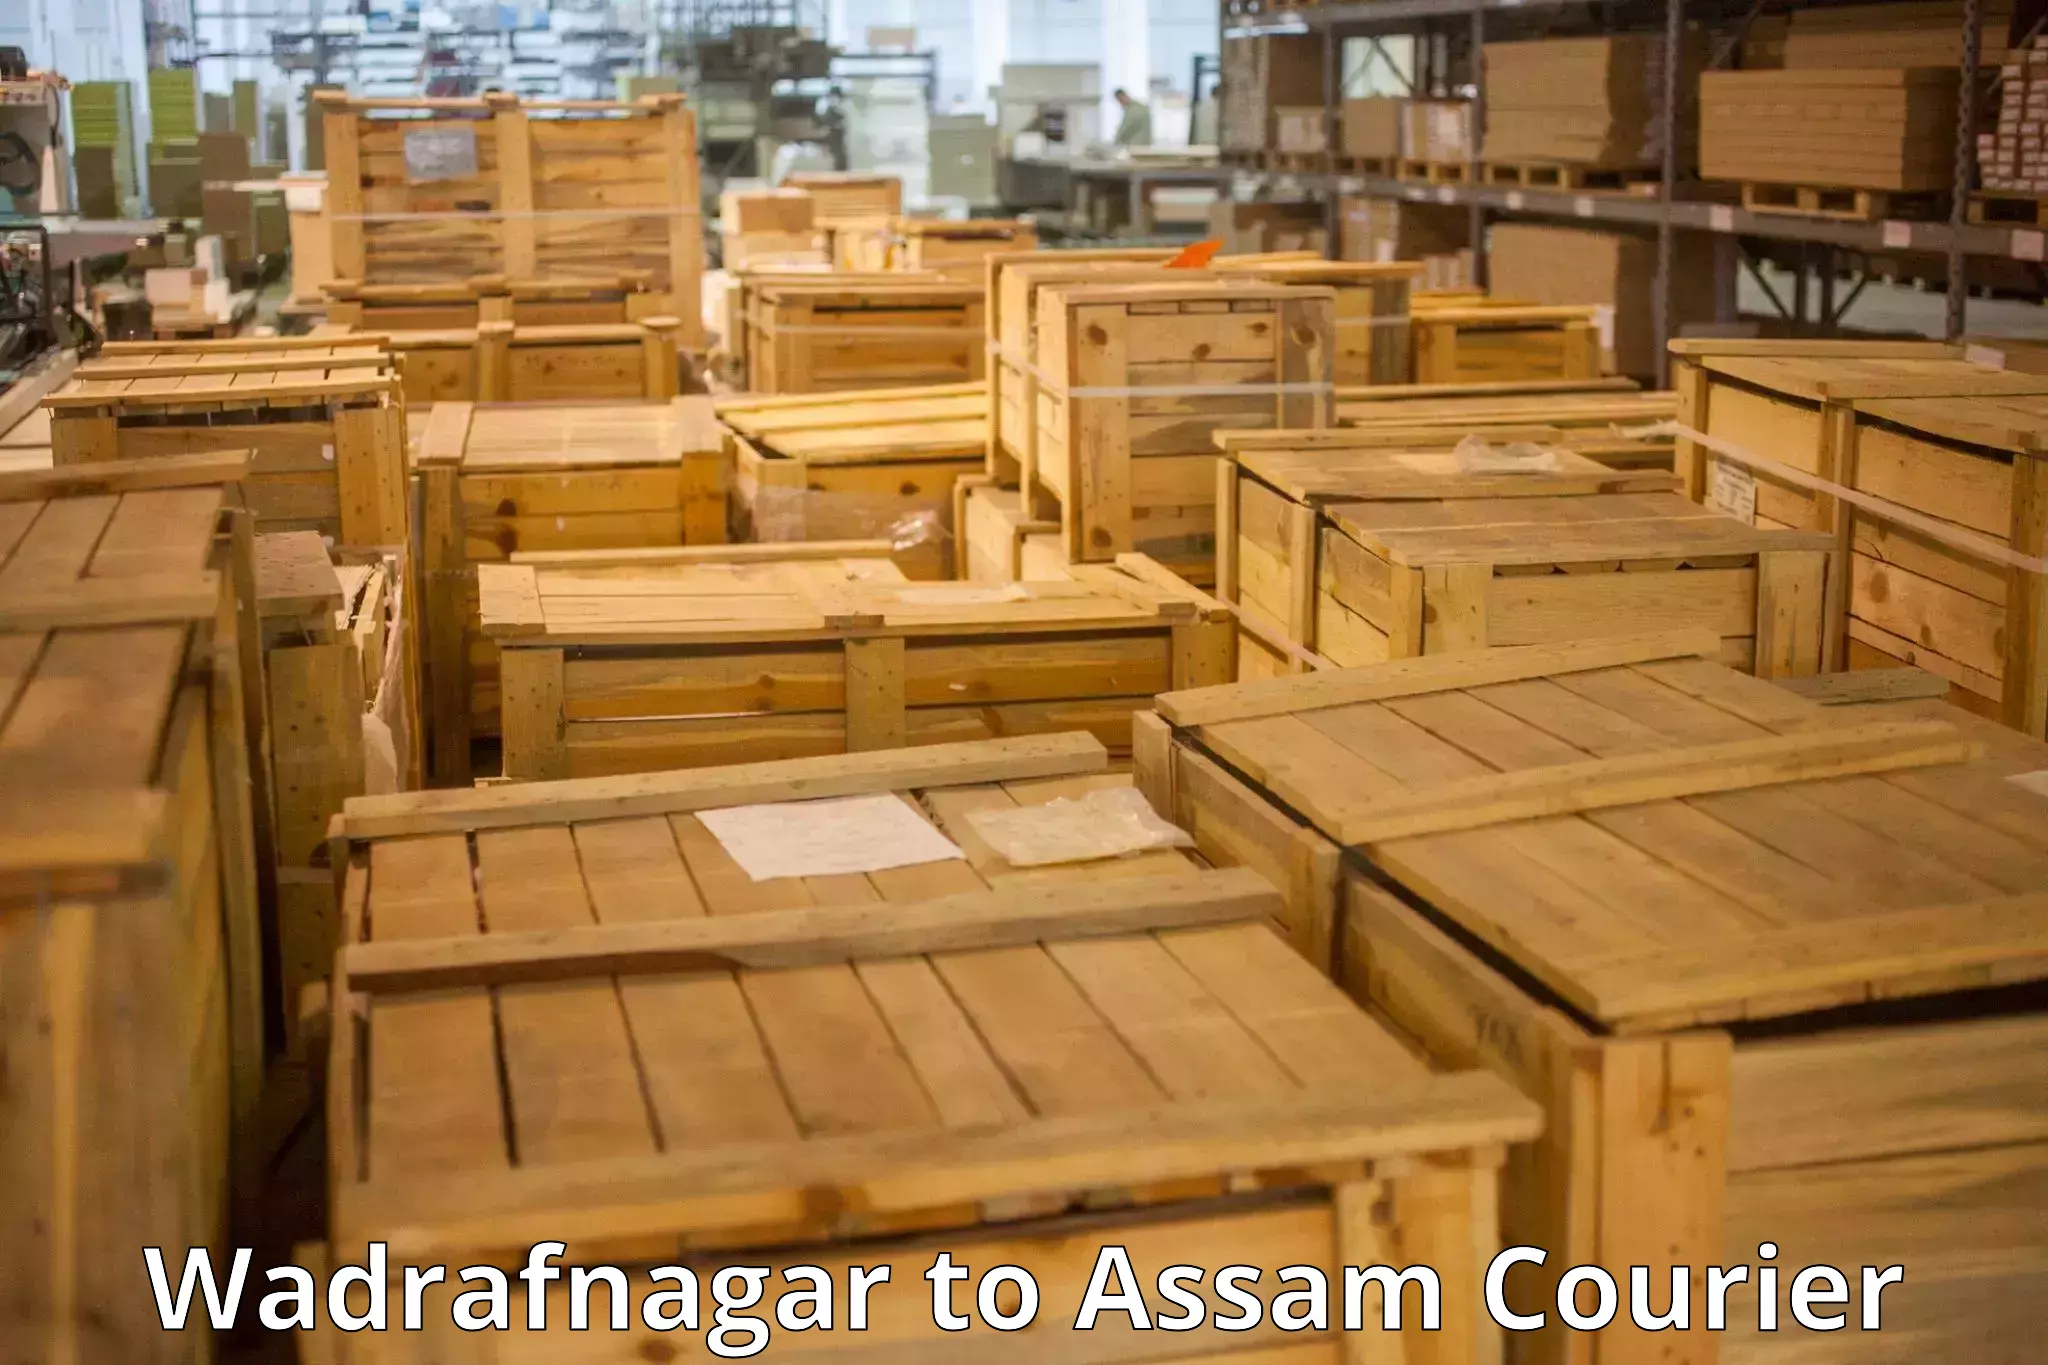 Scheduled baggage courier Wadrafnagar to Dibrugarh University